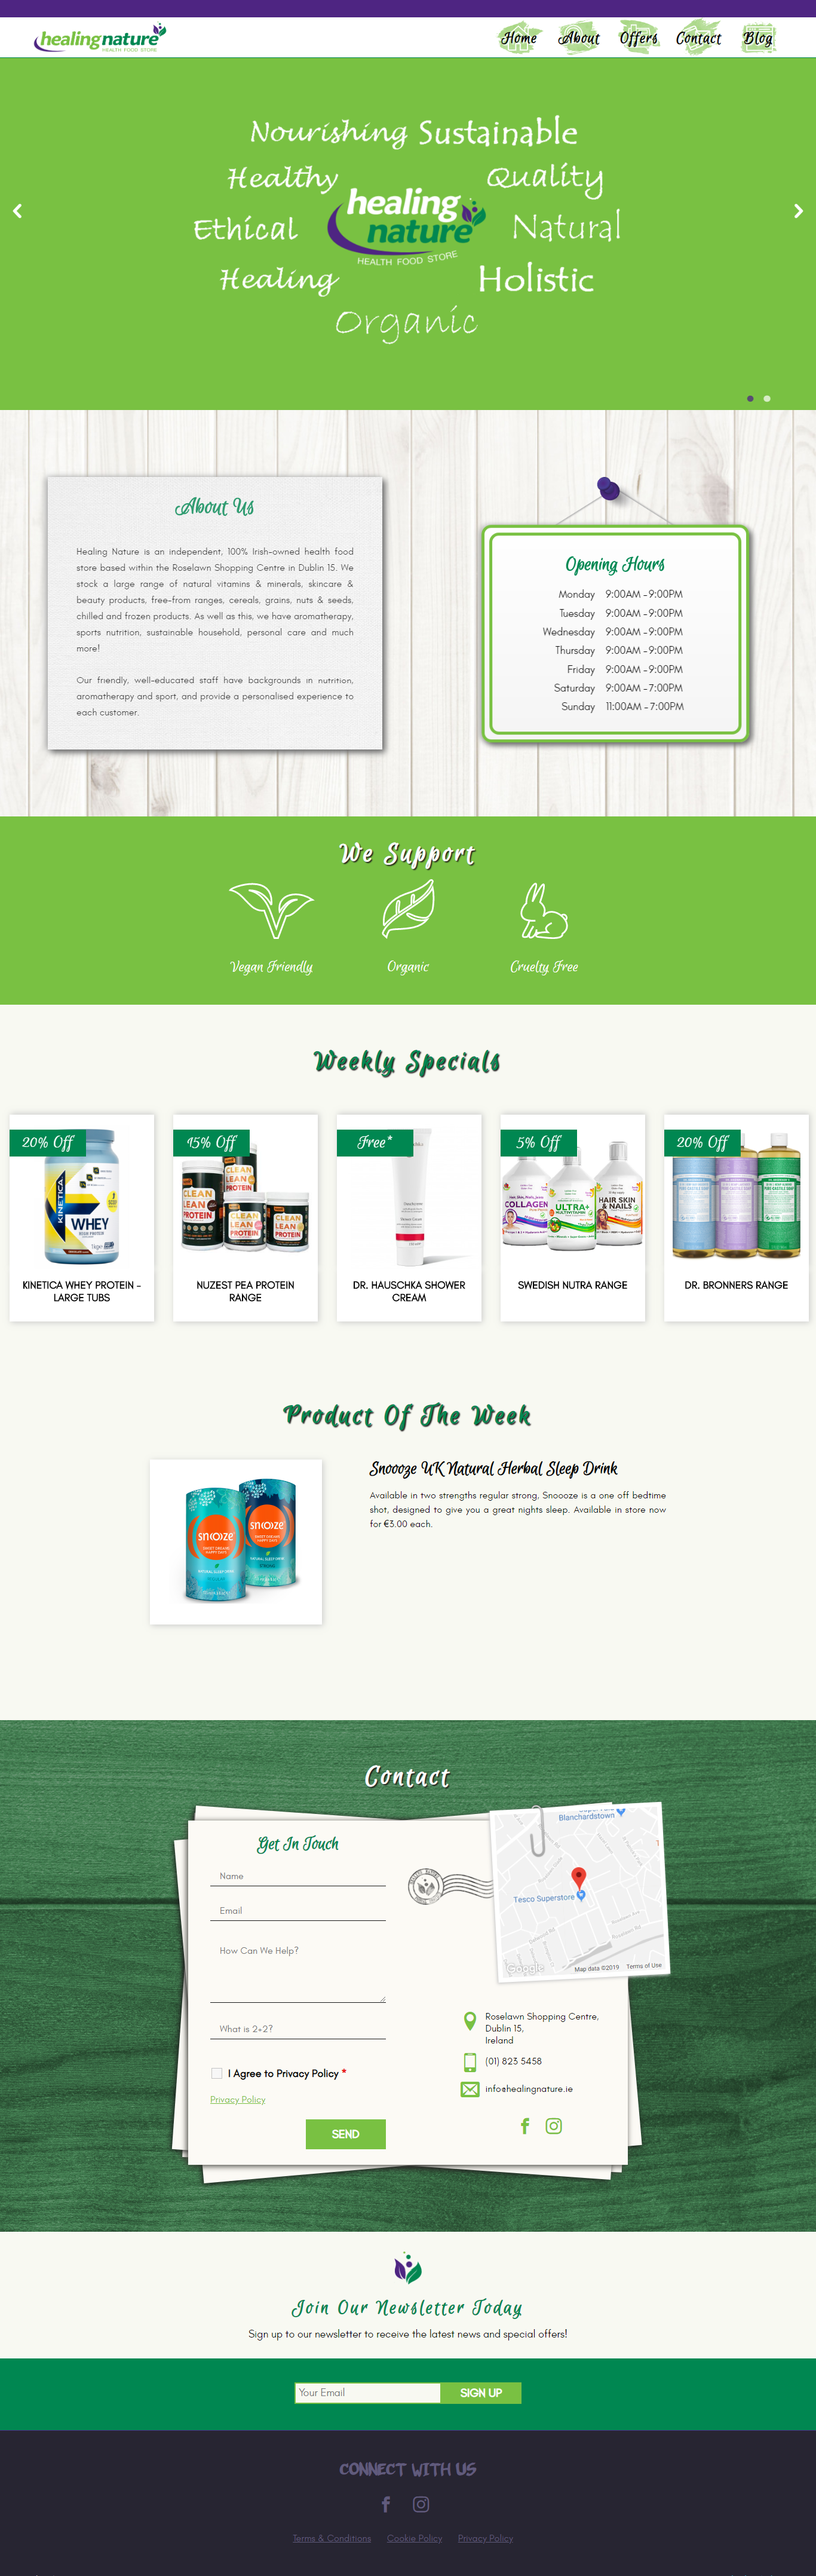 Health Food Store e-commerce web design Dublin